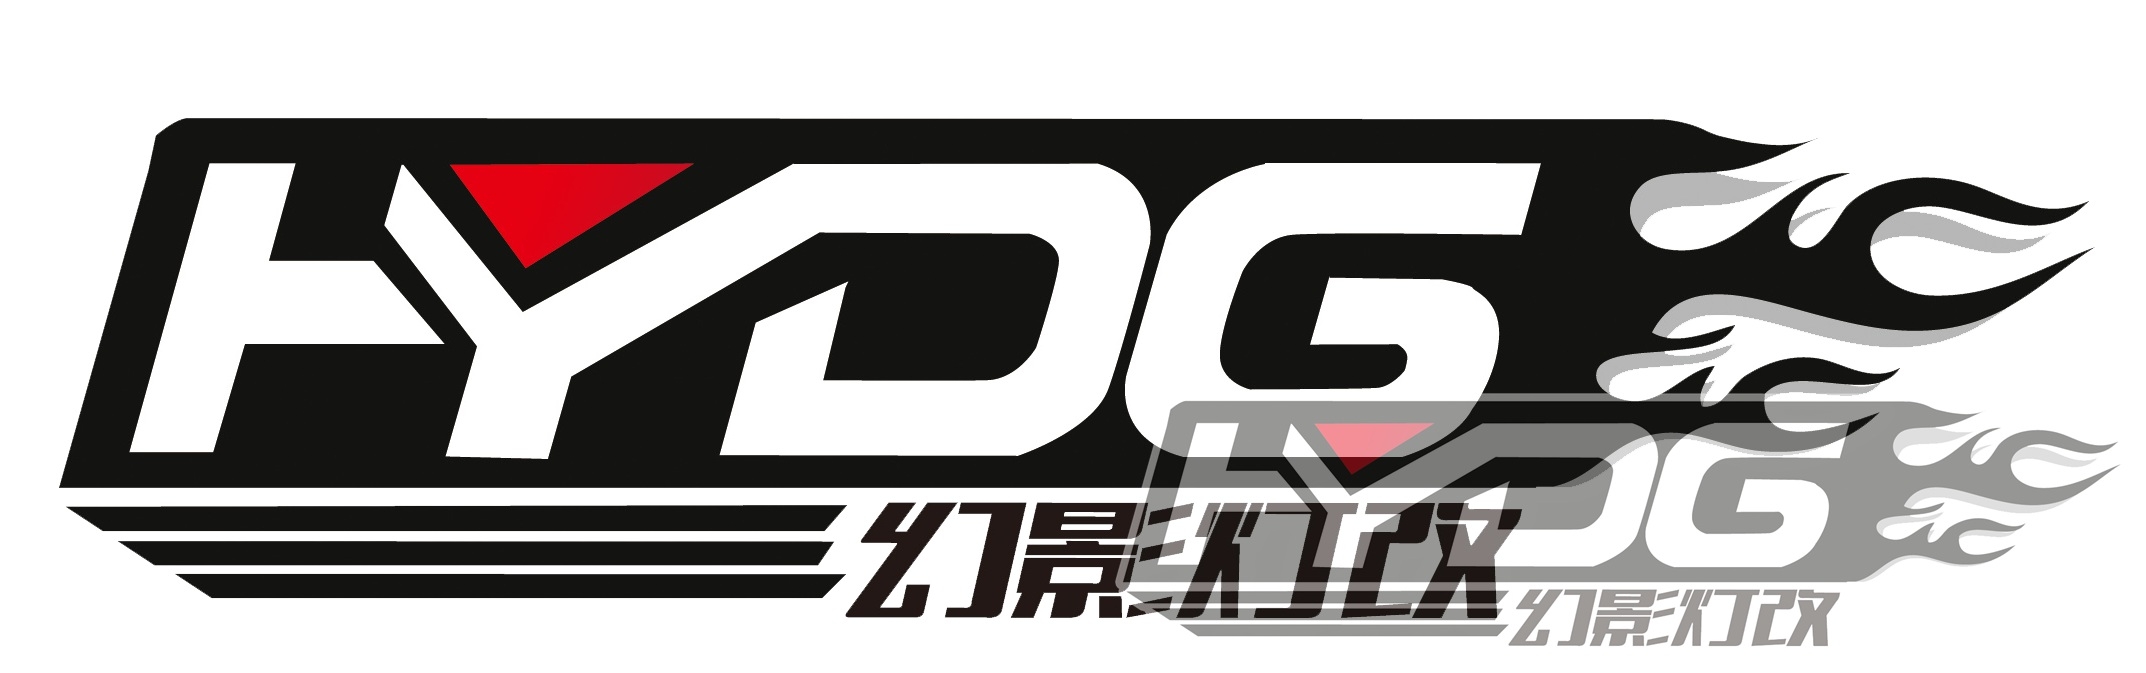 铜陵幻影灯改 Logo